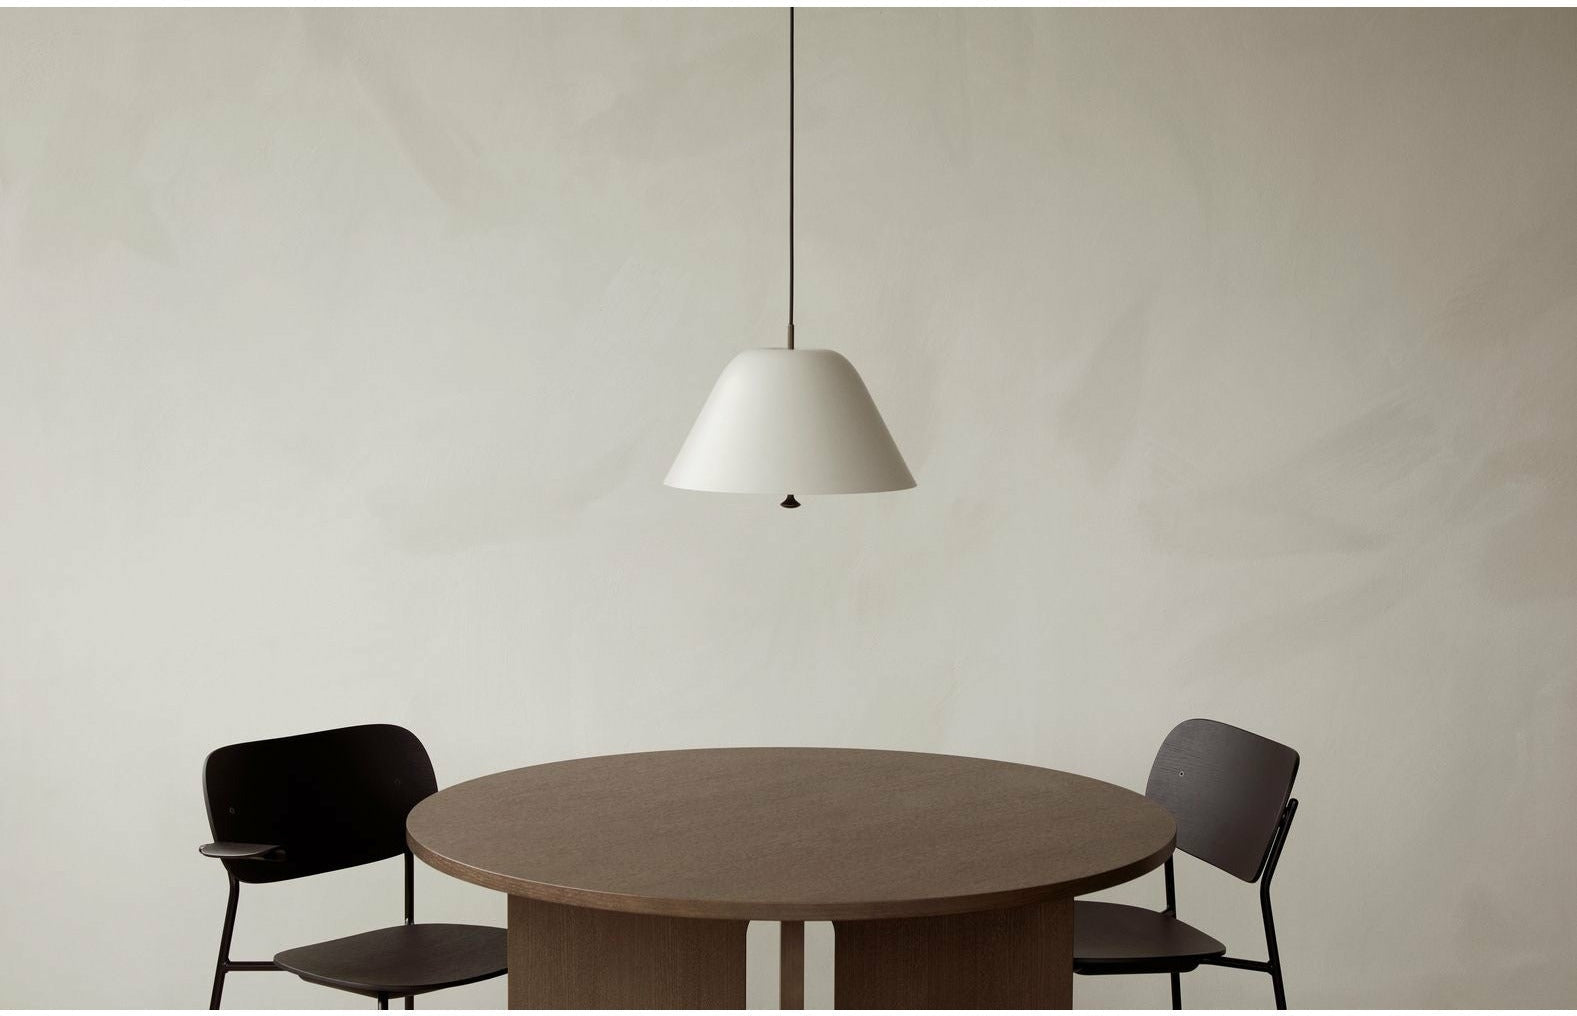 奥多·哥本哈根公司的食品椅和扶手深色染色橡木，黑色